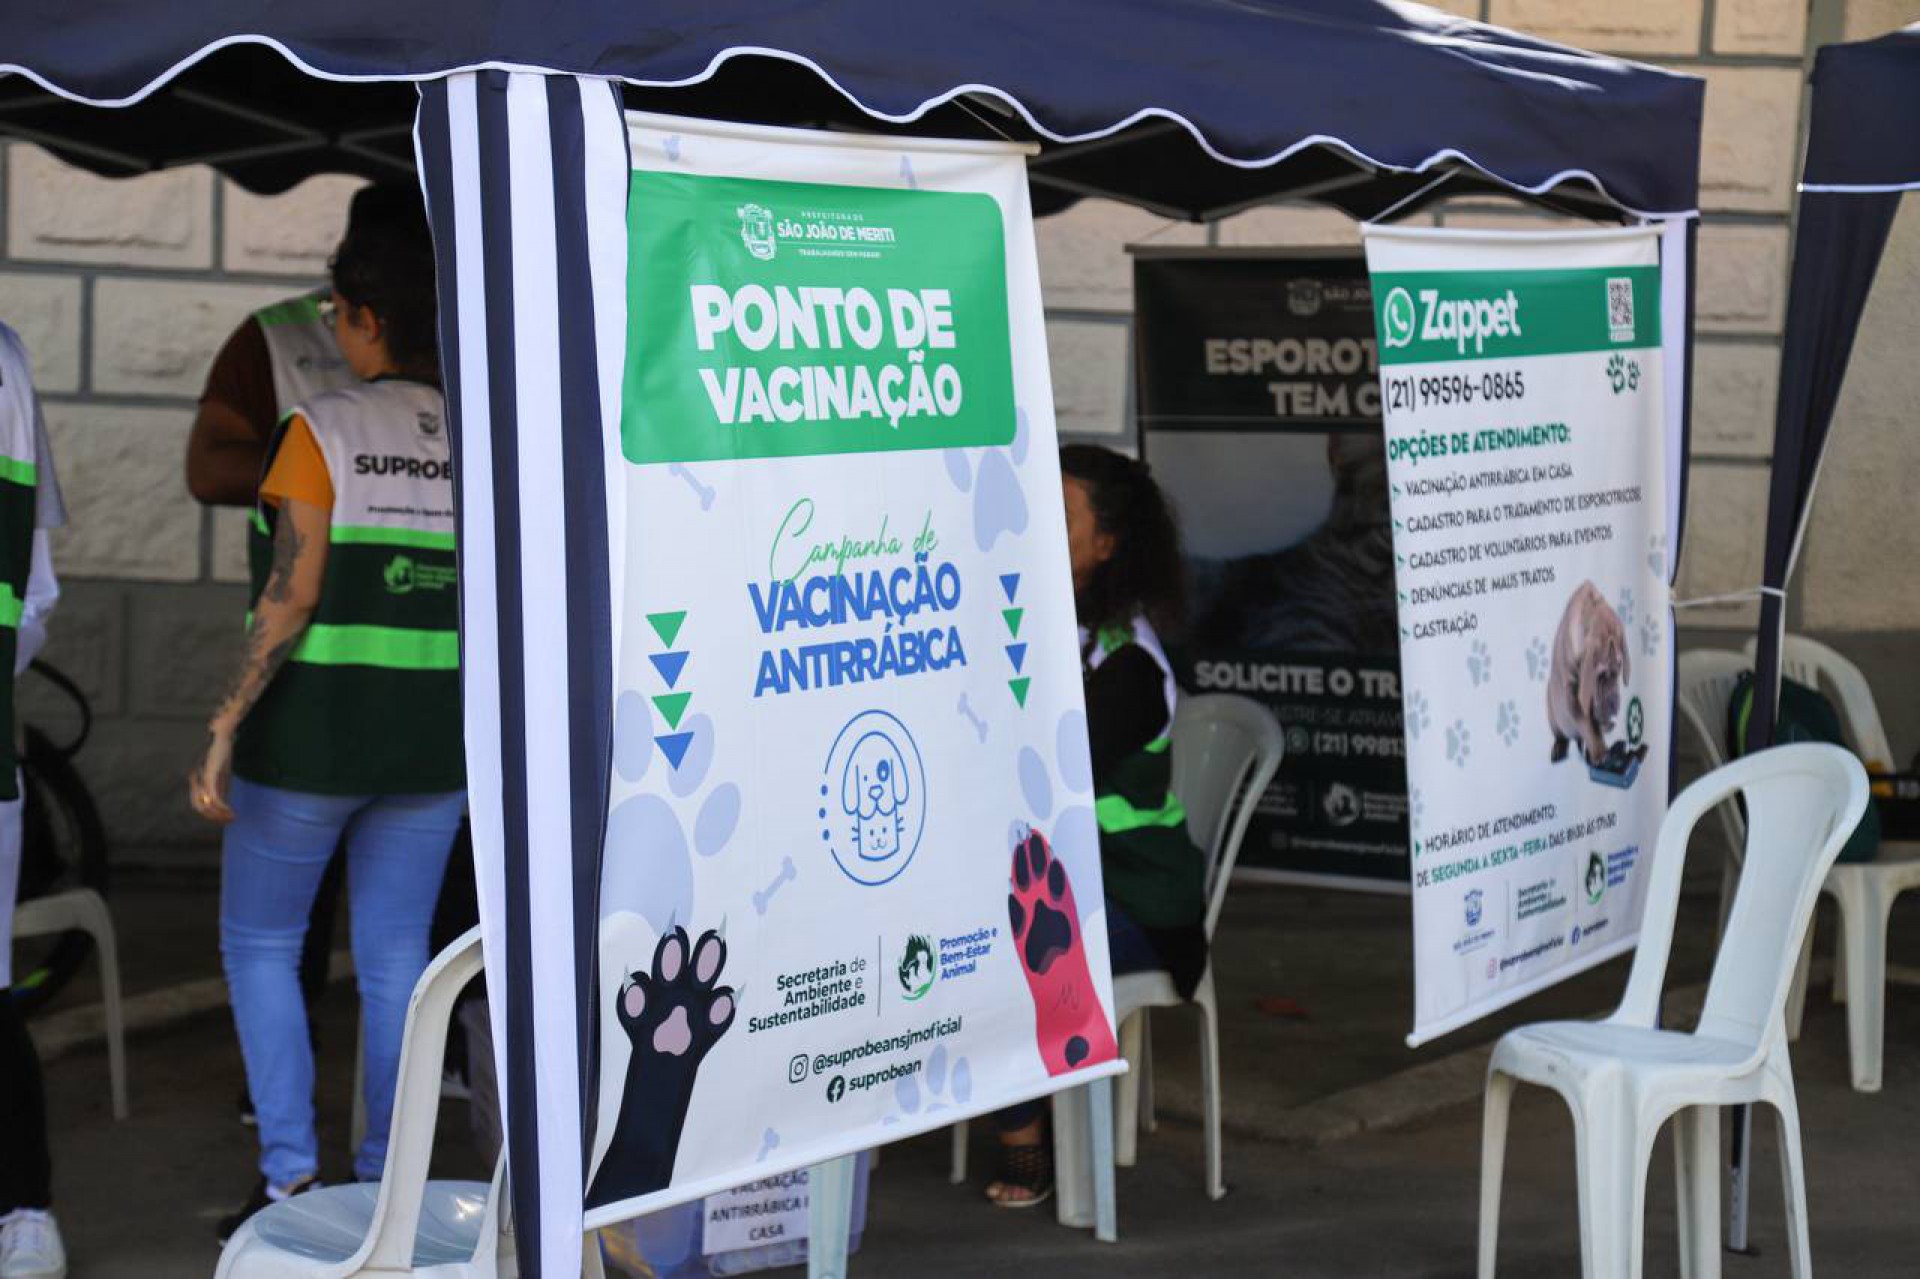   Campanha de Vacinação Antirrábica Itinerante na Vila Rosali - Deborah Vitória  